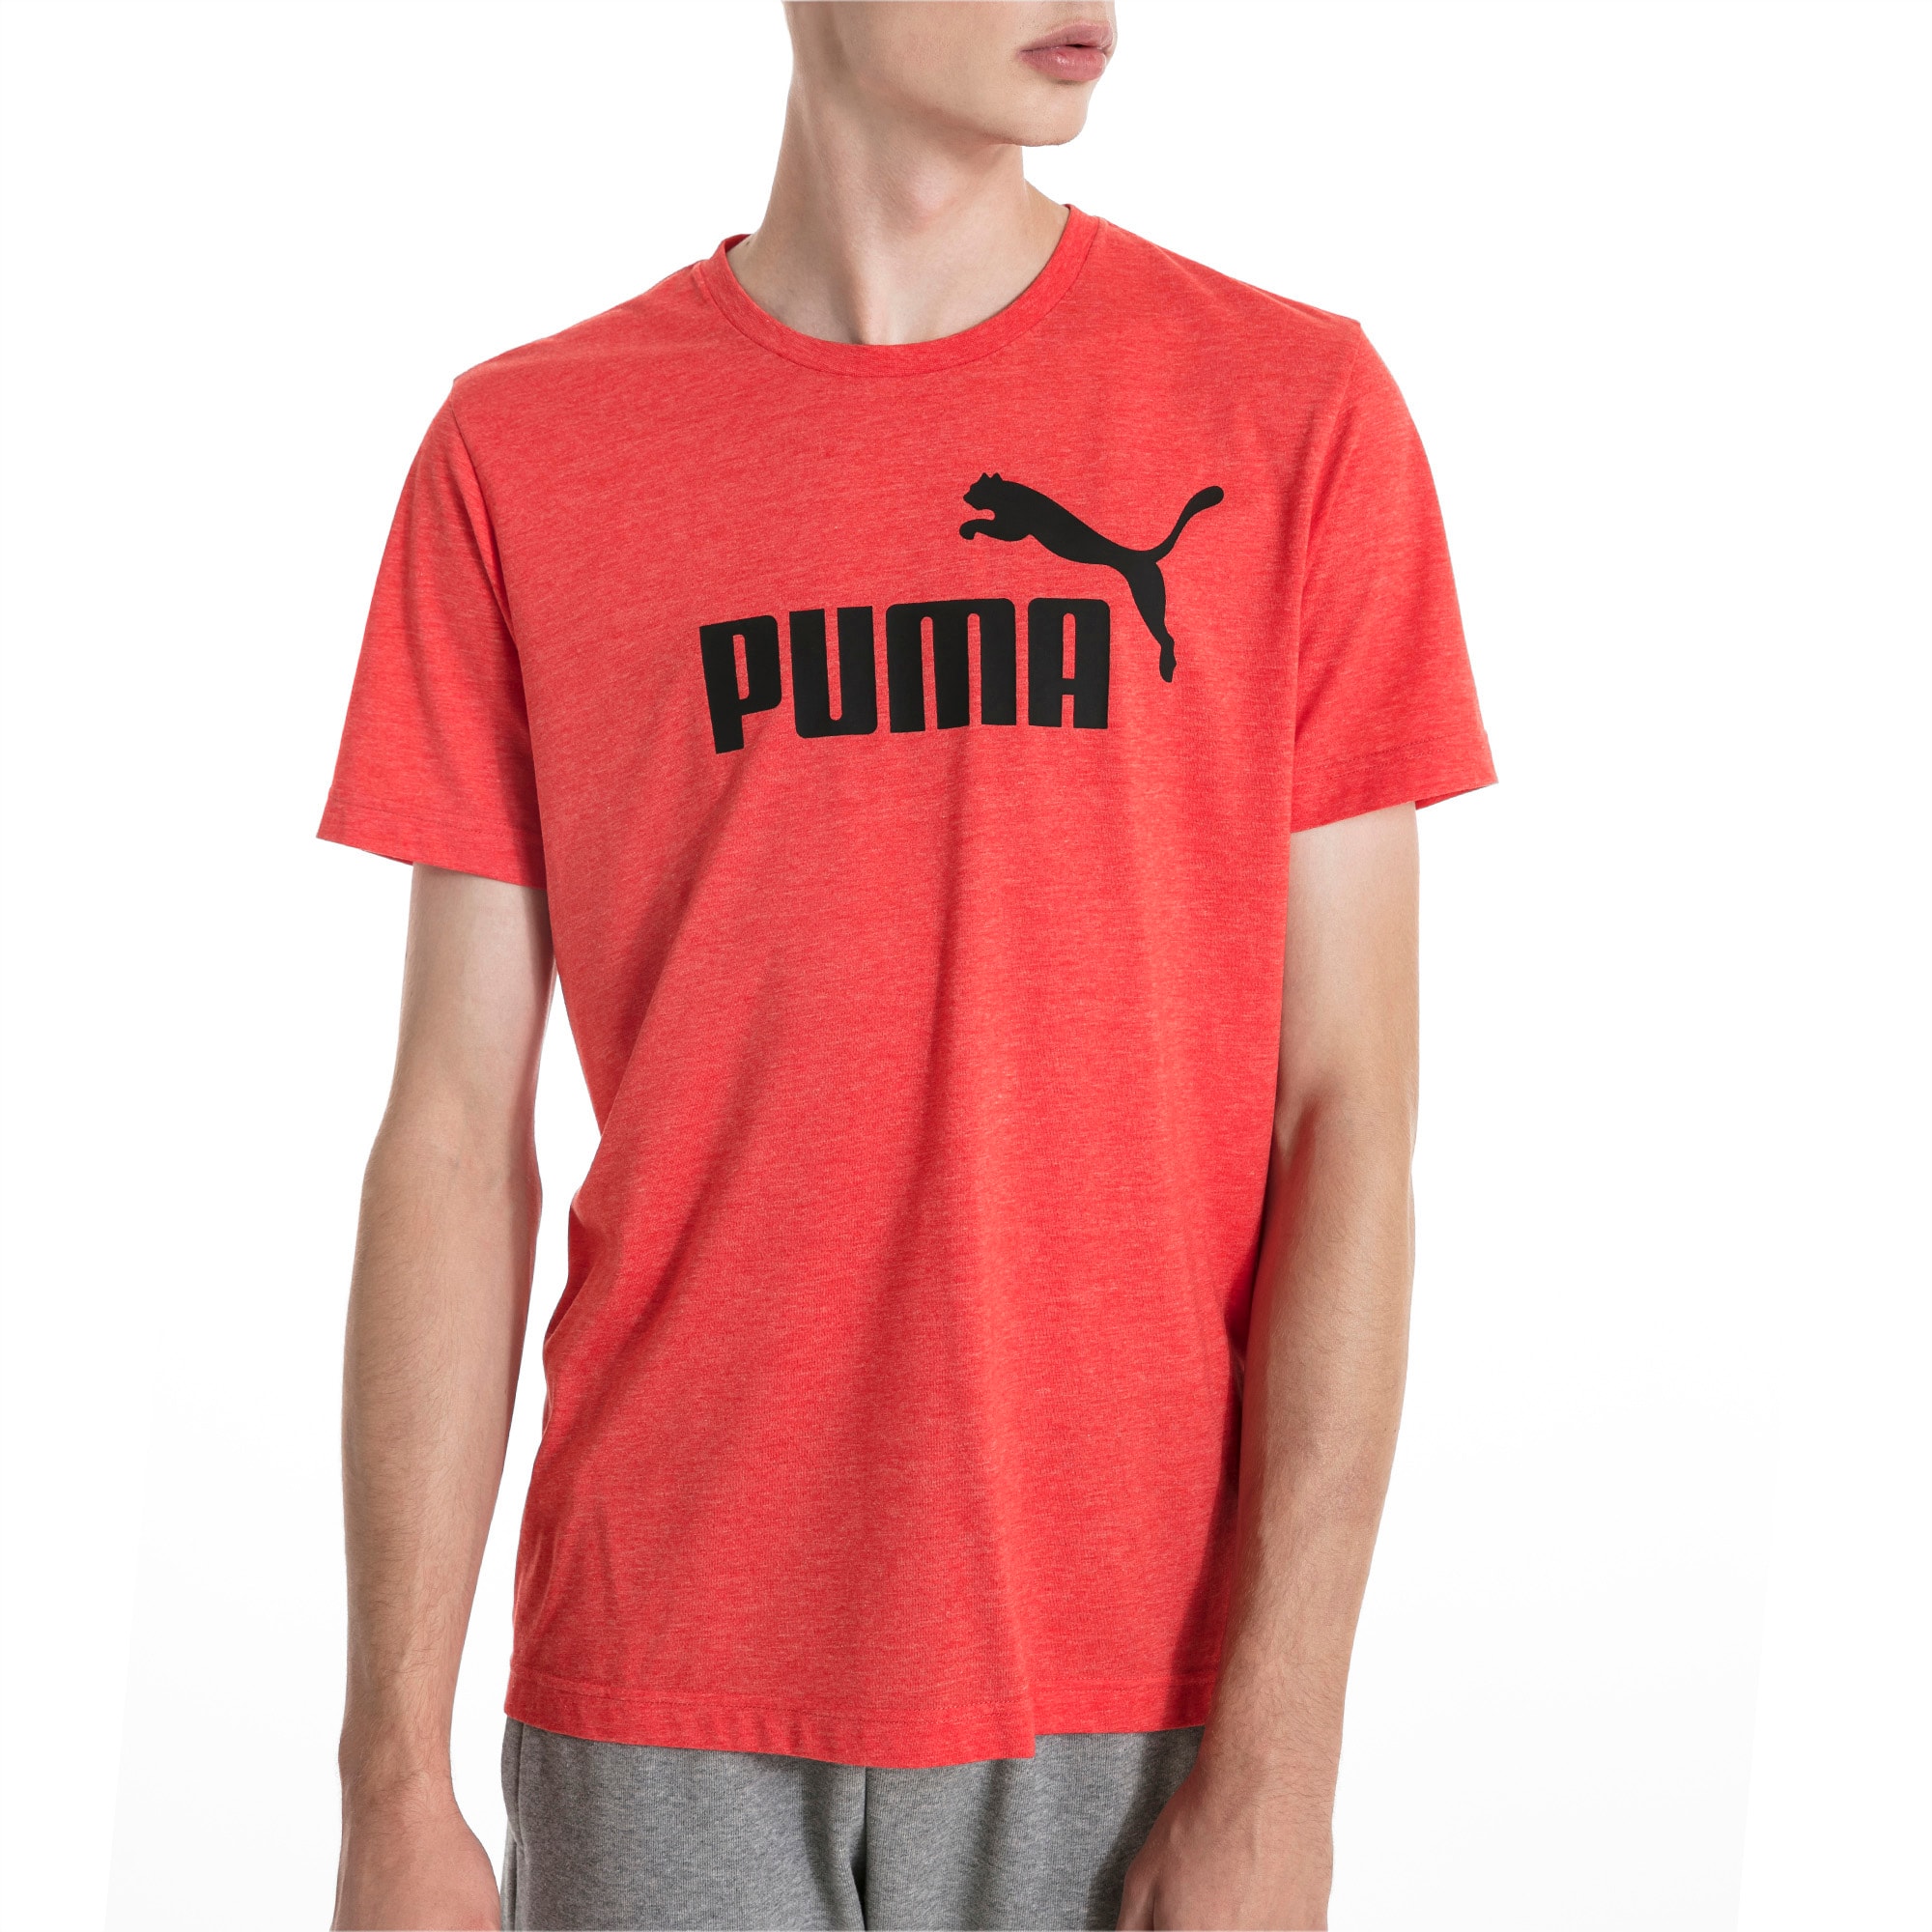 puma maroon t shirt